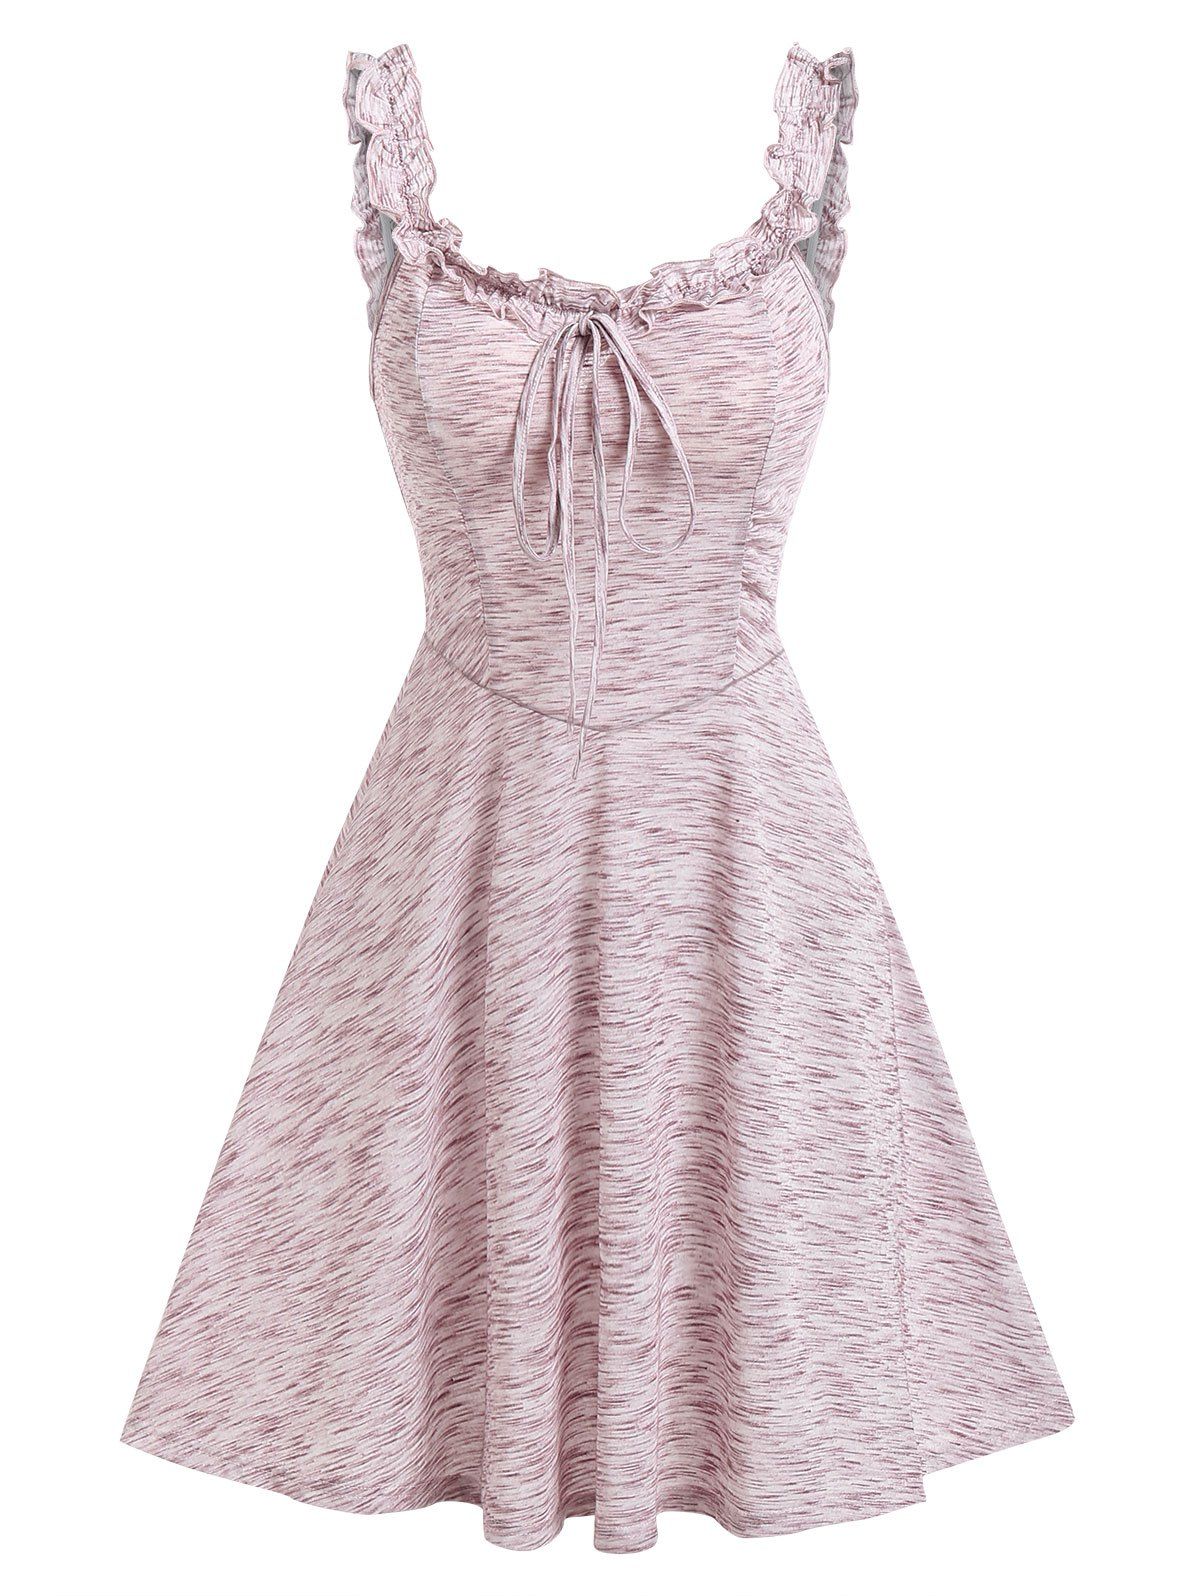 Summer Vacation Sundress Ruffled Space Dye Tie Up Mini A Line Dress - LIGHT PINK XL